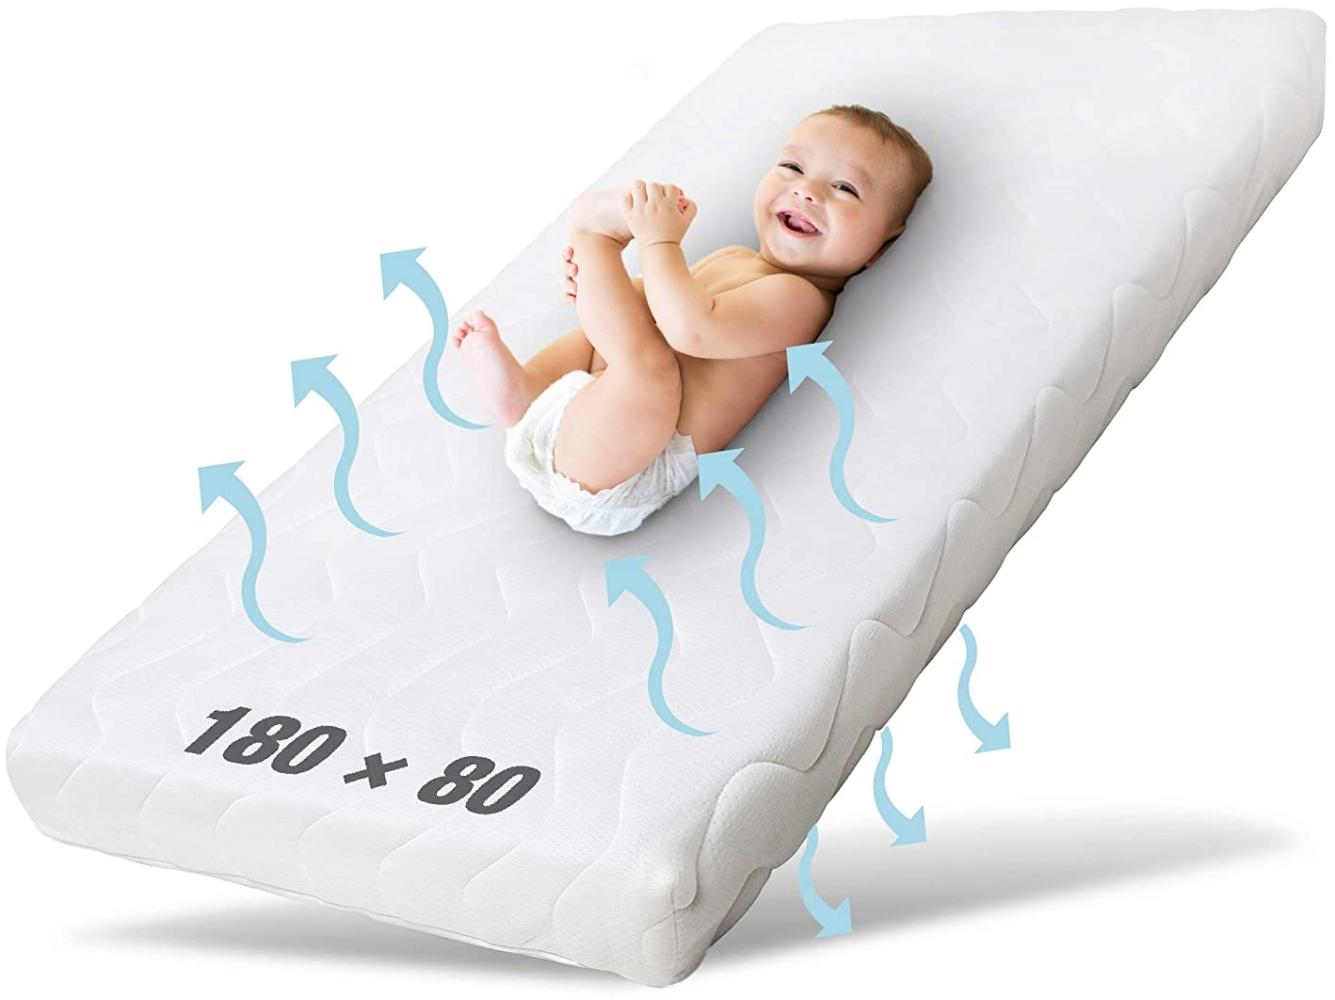 Ehrenkind® Kindermatratze Pur | Baby Matratze 80x180 | Babymatratze 80x180 aus hochwertigem Schaum und Hygienebezug Bild 1